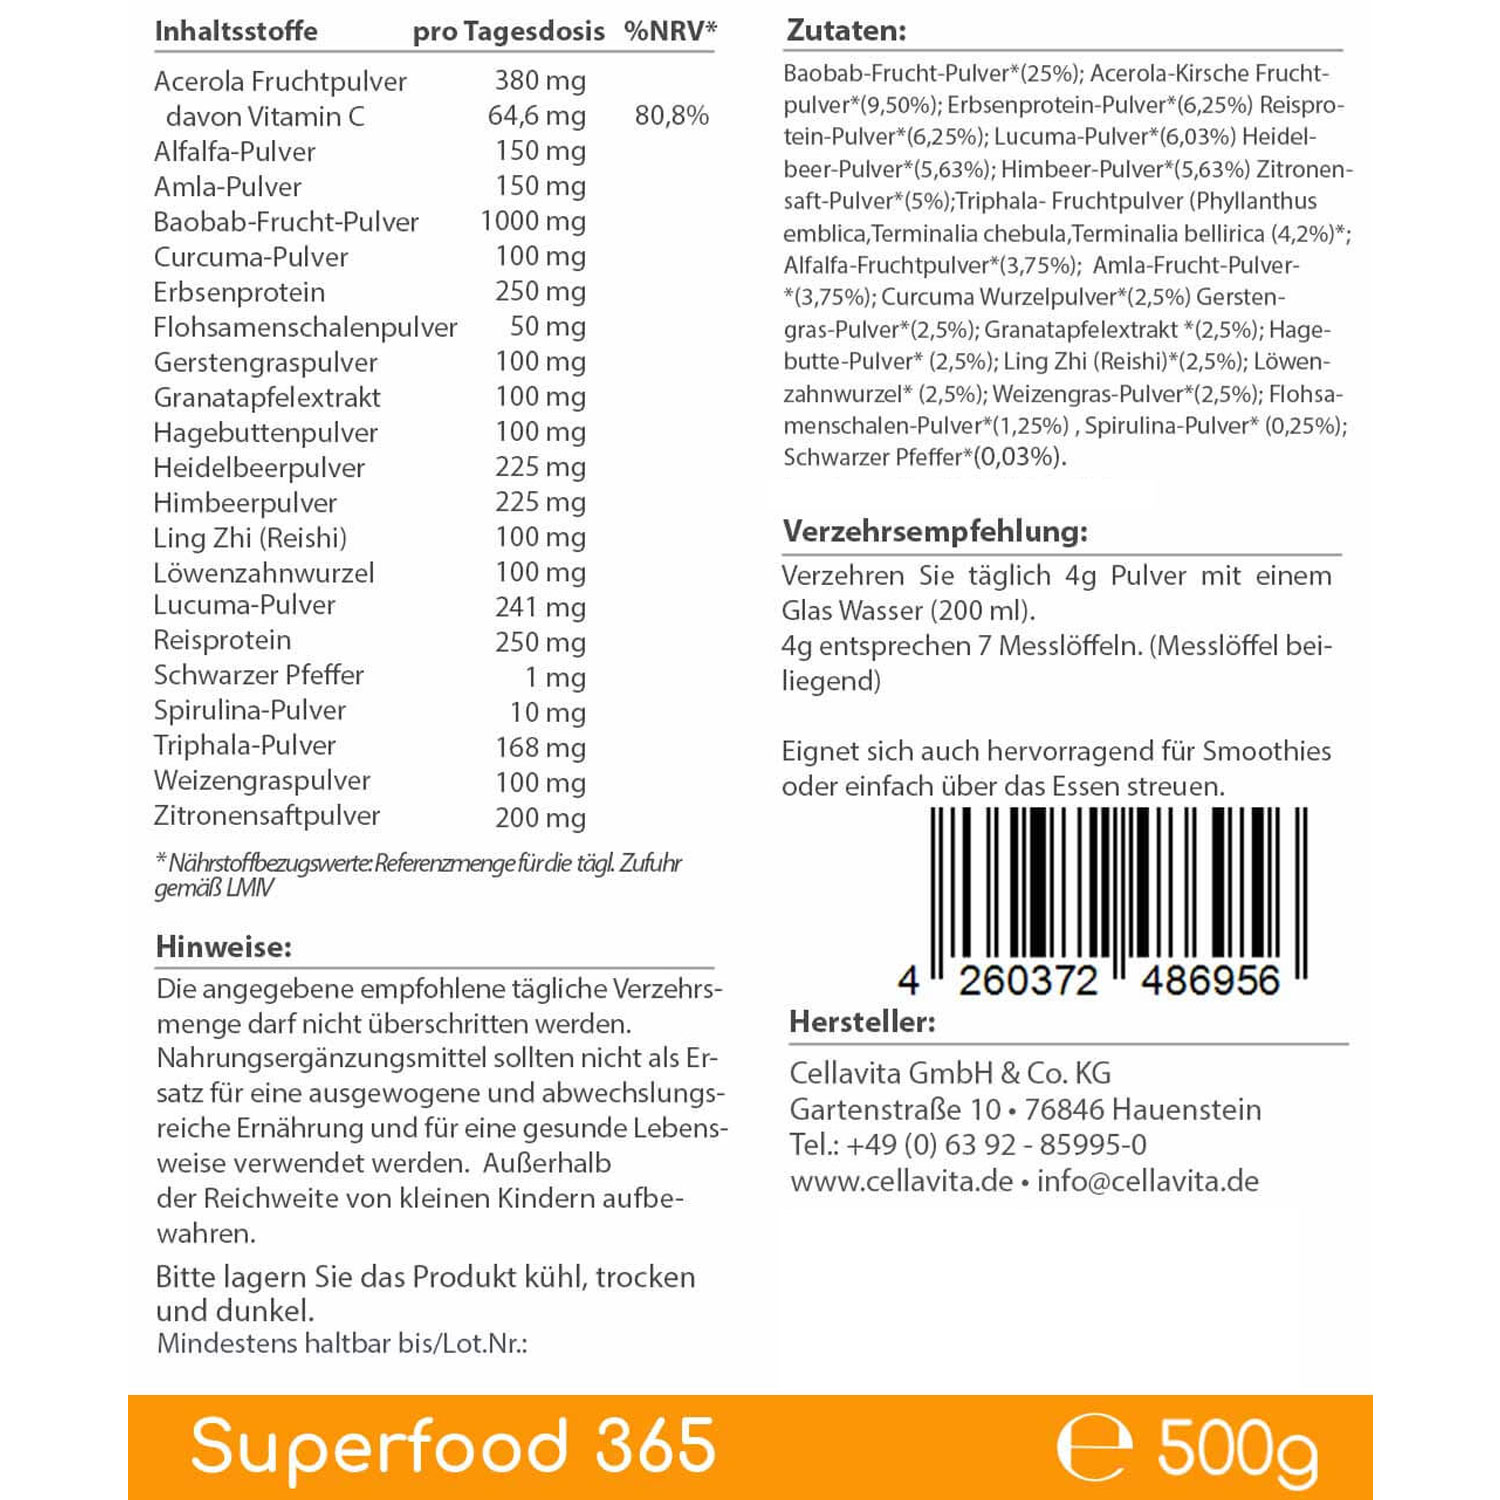 Superfood 365 von Cellavita - 500g - Etikett Rückseite